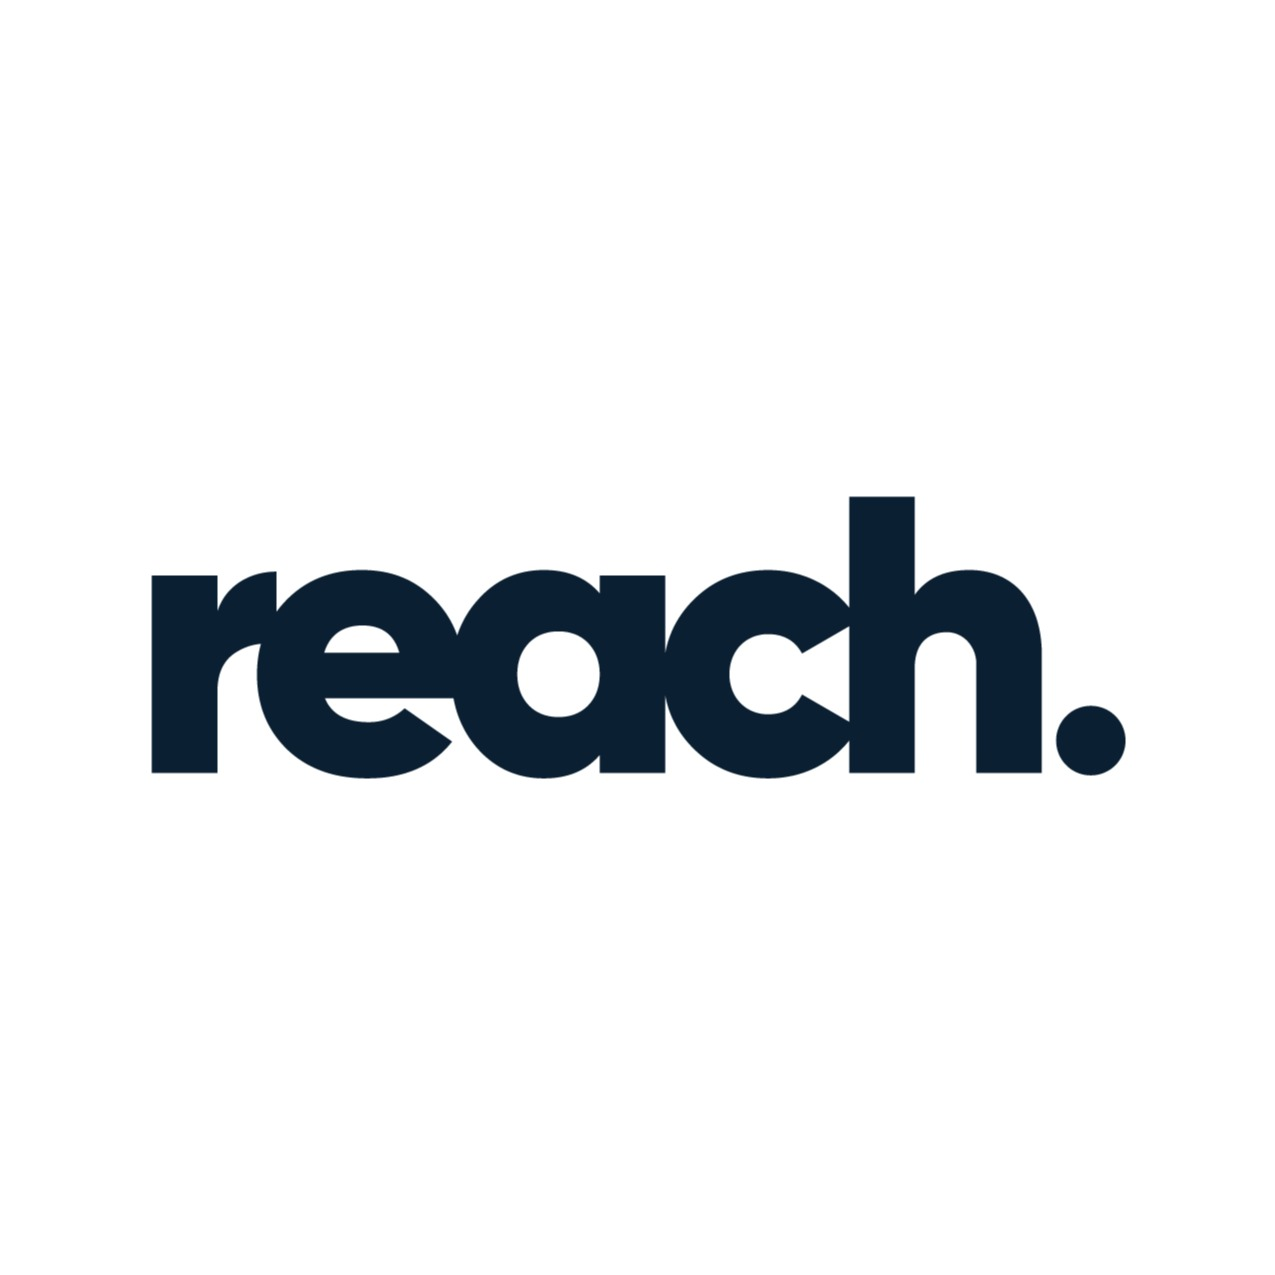 Reach Software Development Employer Skills Academy